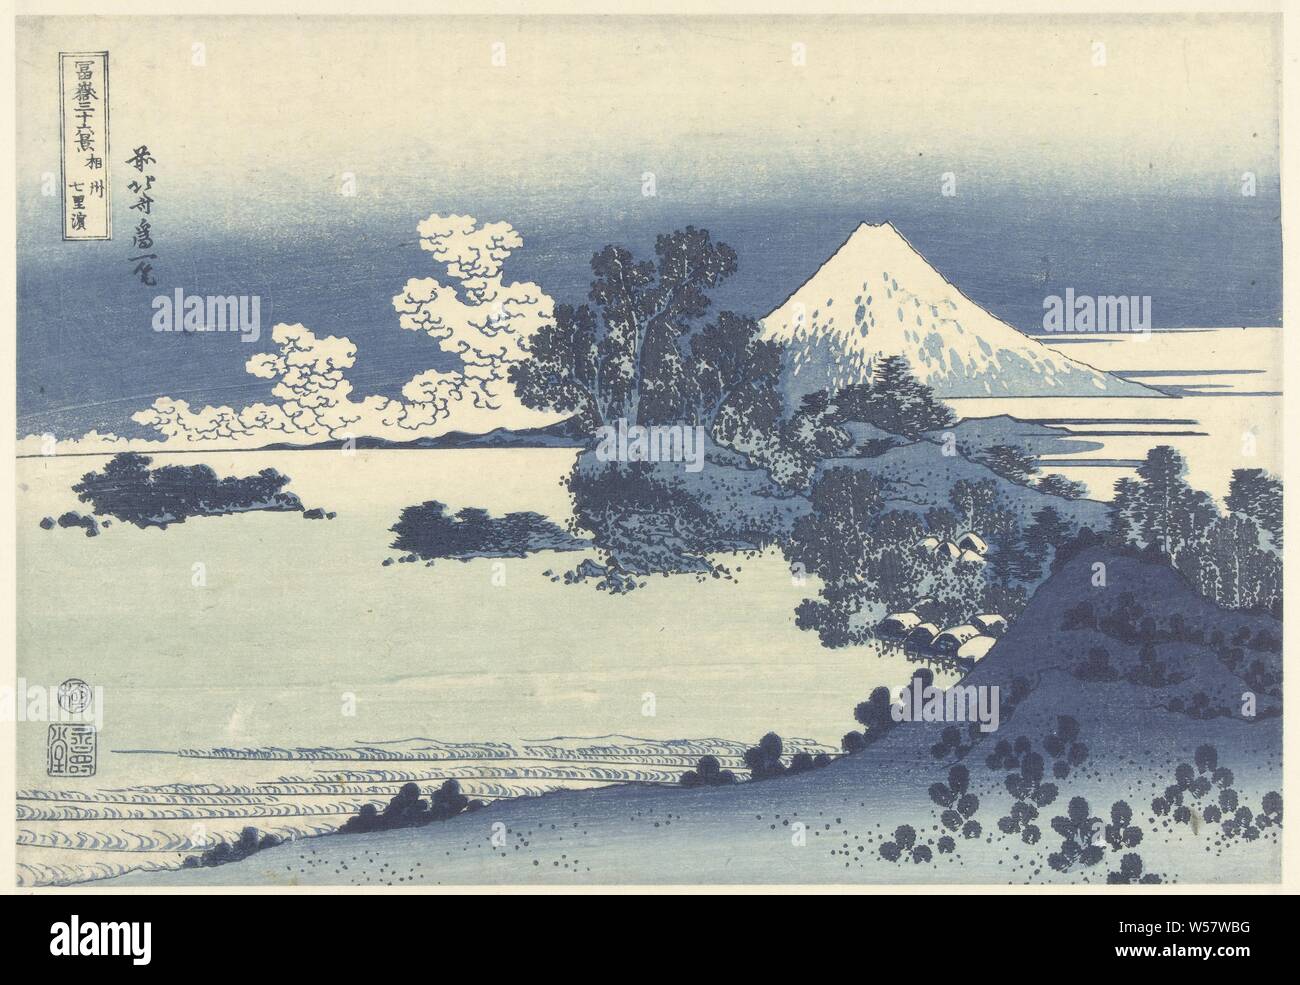 Shichiri-ga-hama Strand in Sagami Soshu Provinz Shichiri-ga-hama (Titel auf Objekt) 36 Blick auf Mount Fuji (Titel der Serie) Fuji sanjurokkei (Titel der Serie auf Objekt), Blick auf die bergige Küste mit Bäumen und Häusern auf dem Wasser, die verschneiten Berg Fuji im Hintergrund, Fuji, der Berg, Katsushika Hokusai (auf Objekt erwähnt), 1830-1834, Papier, Farbholzschnitt, H 254 mm x B 369 mm Stockfoto